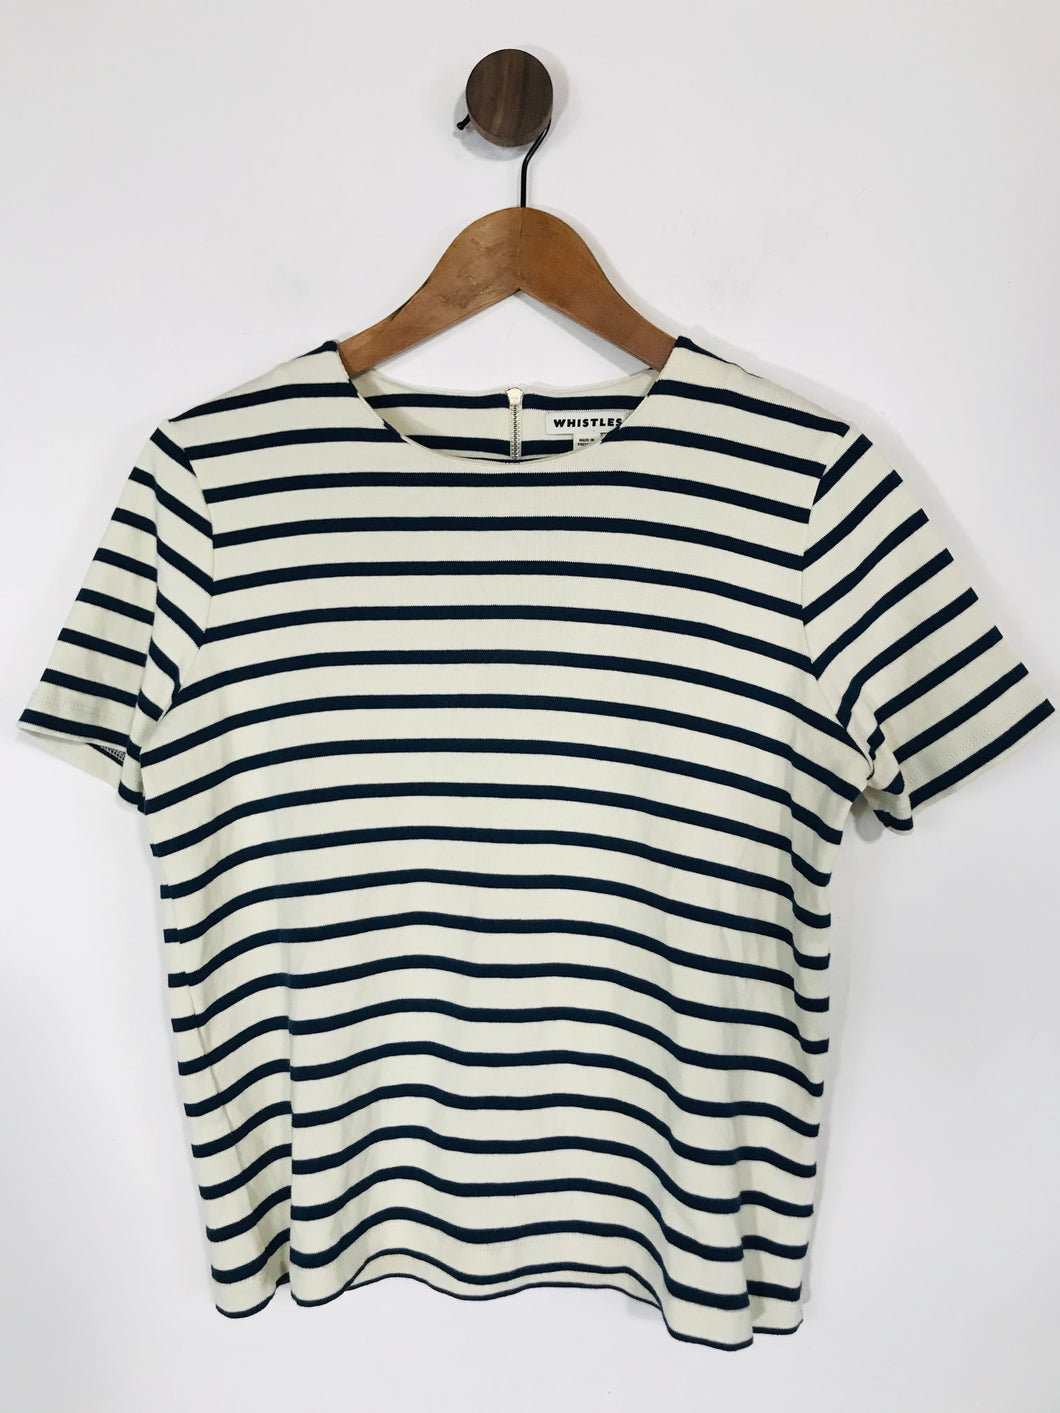 Whistles Women's Striped High Neck T-Shirt | UK10 | White